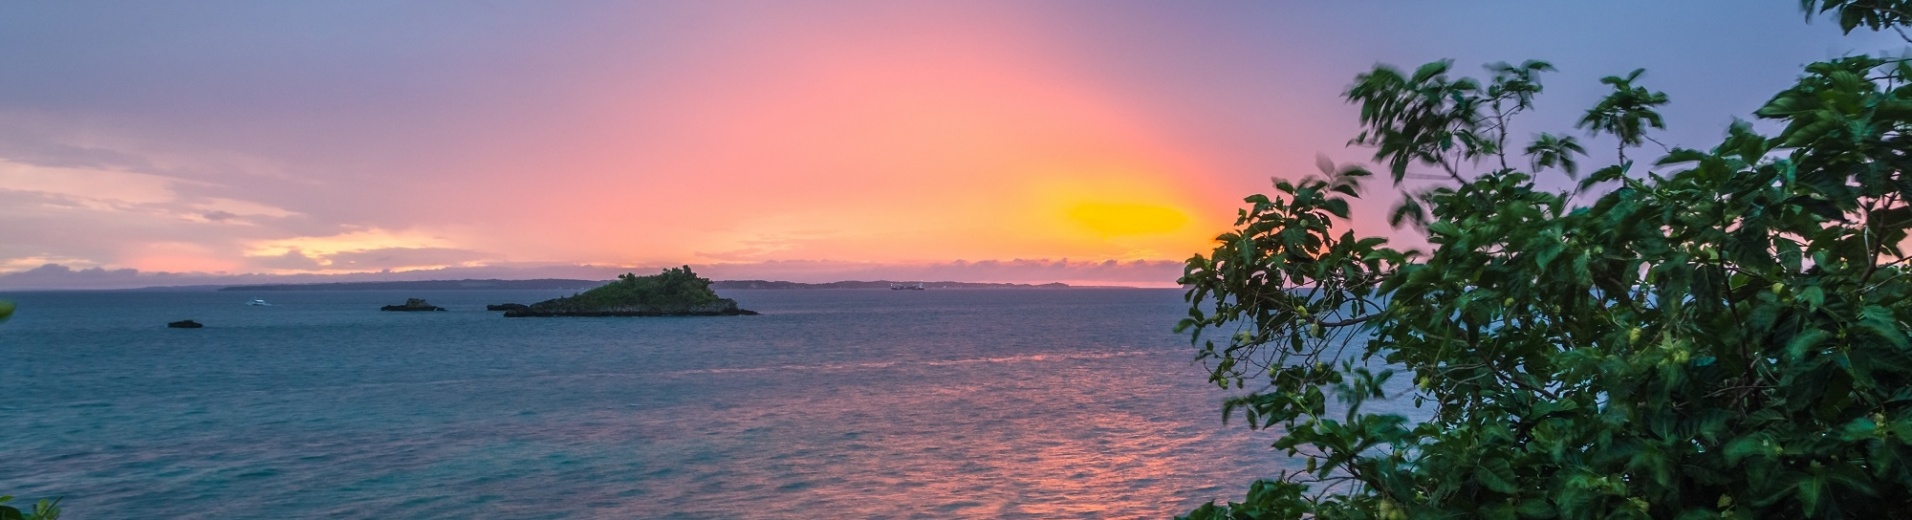 Coucher de soleil sur Malapascua island